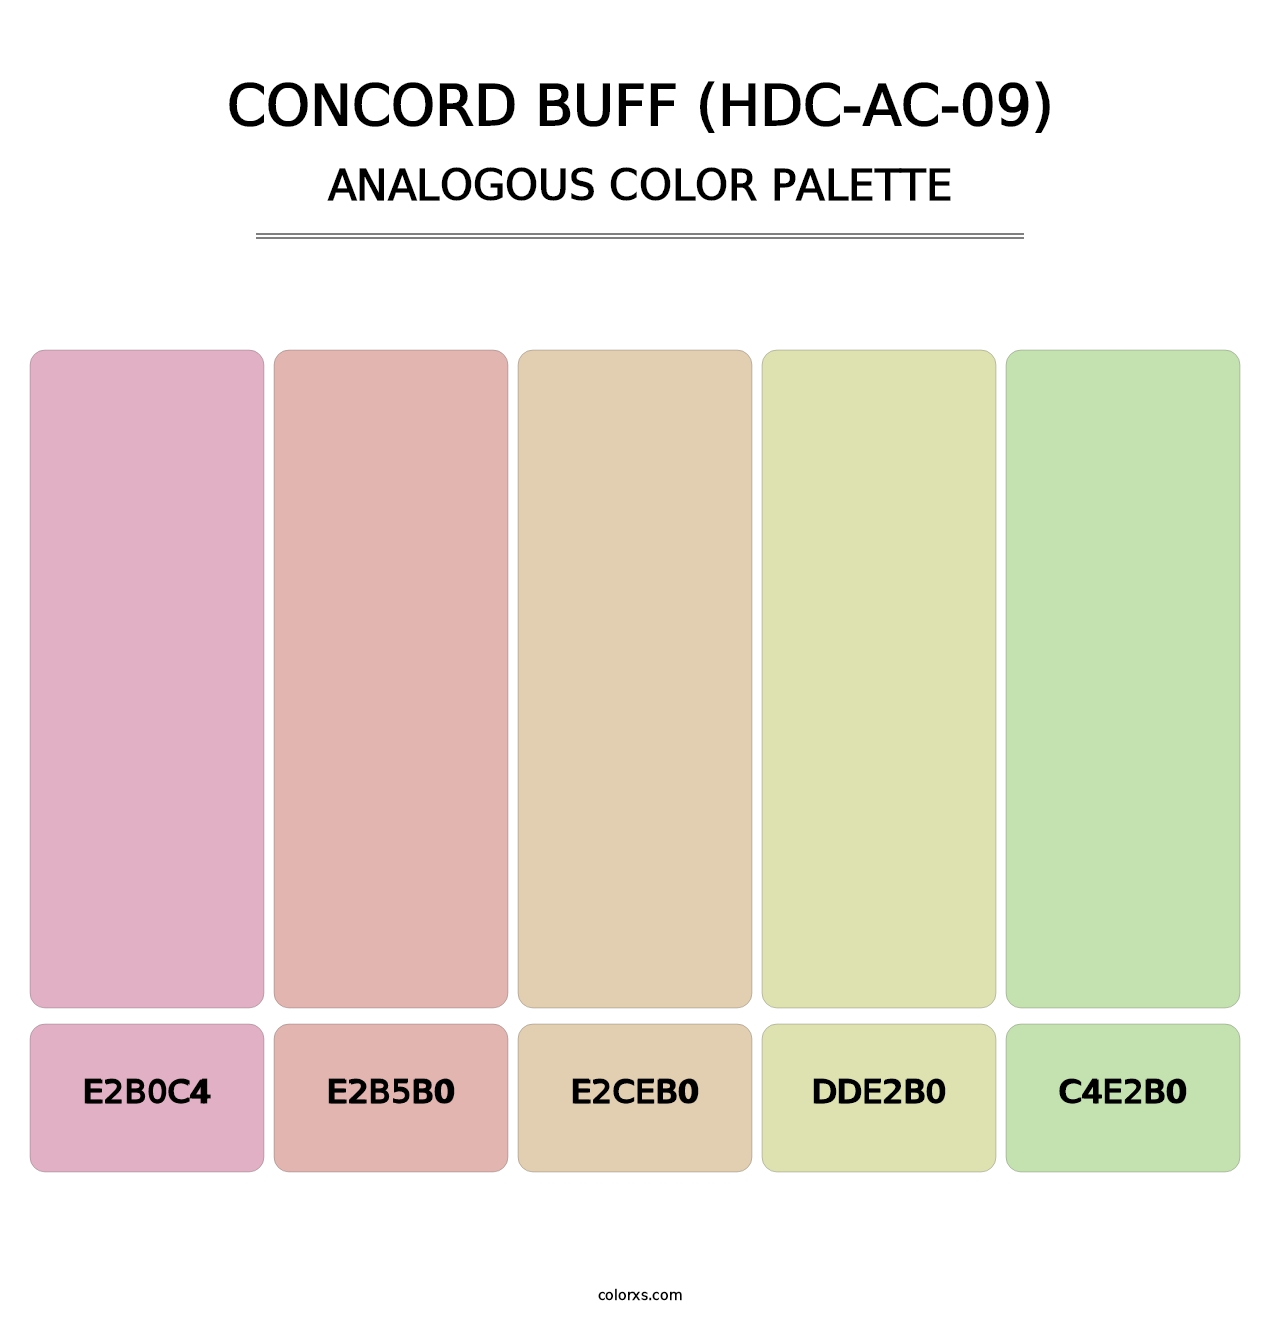 Concord Buff (HDC-AC-09) - Analogous Color Palette